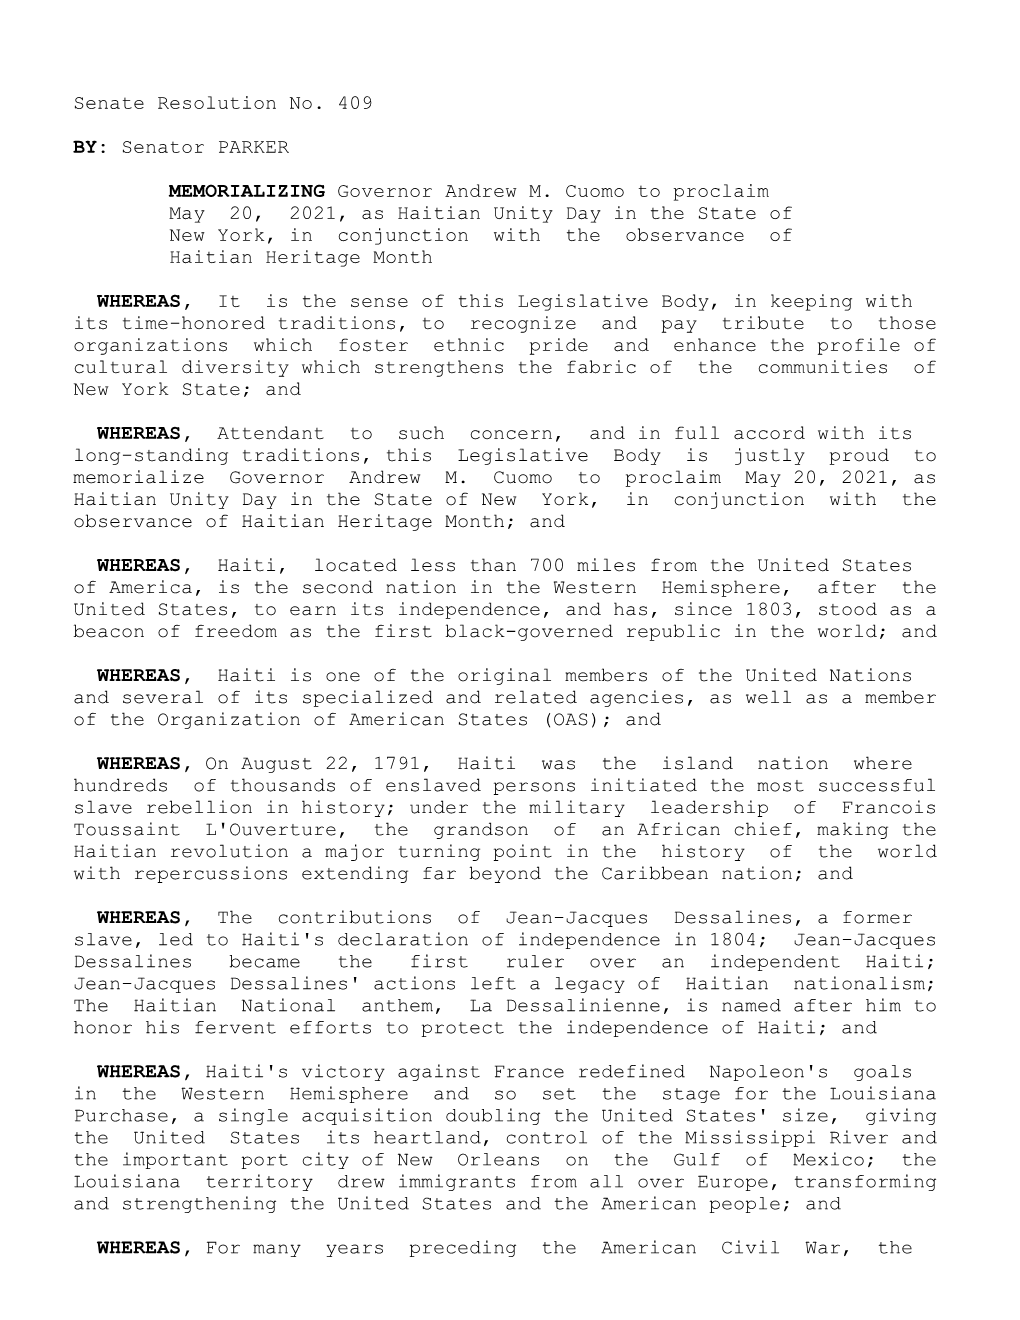 Senate Resolution No. 409 Senator PARKER BY: Governor Andrew